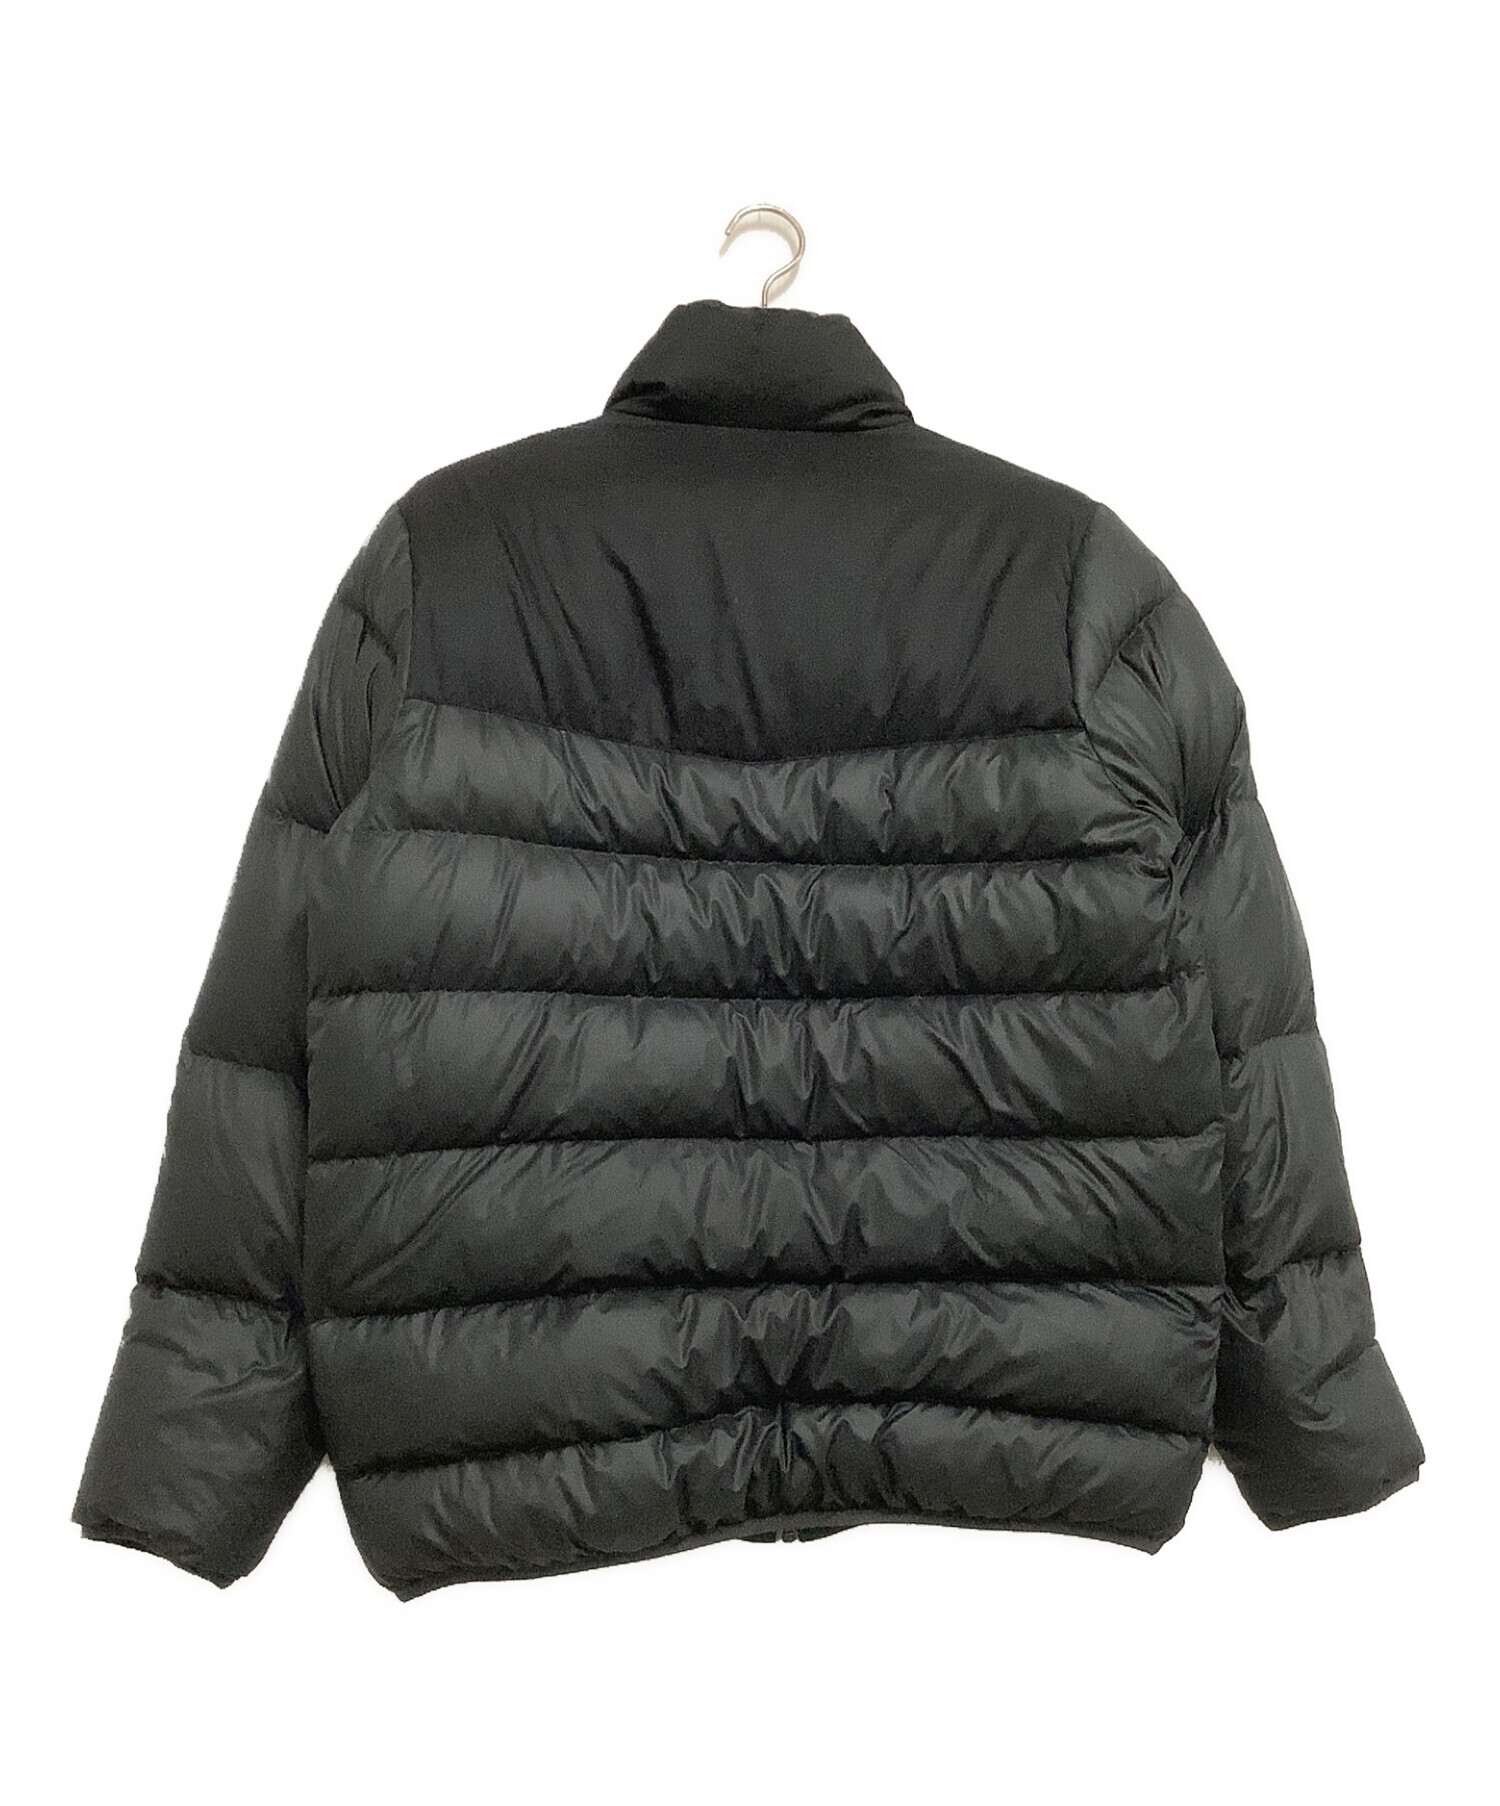 NIKE (ナイキ) リバーシブルダウンジャケット ブラック×グレー サイズ:L